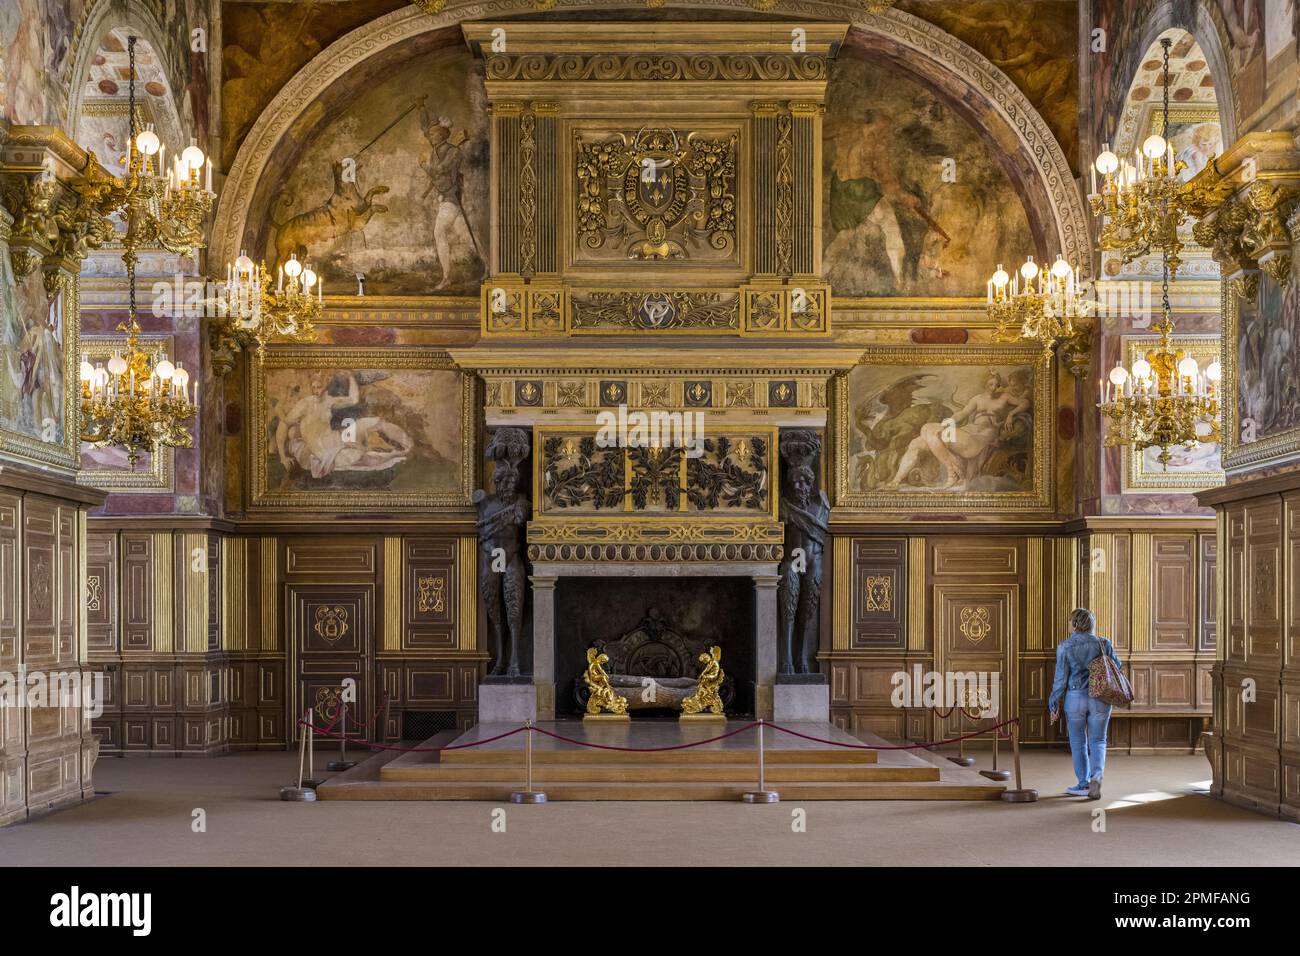 Frankreich, seine-et-Marne, Fontainebleau, Schloss Fontainebleau, das zum Weltkulturerbe der UNESCO gehört, der Ballsaal, der von Philibert Delorme entworfene Kamin ruht auf zwei gegossenen Bronzeatlanten, die Satyrs repräsentieren Stockfoto